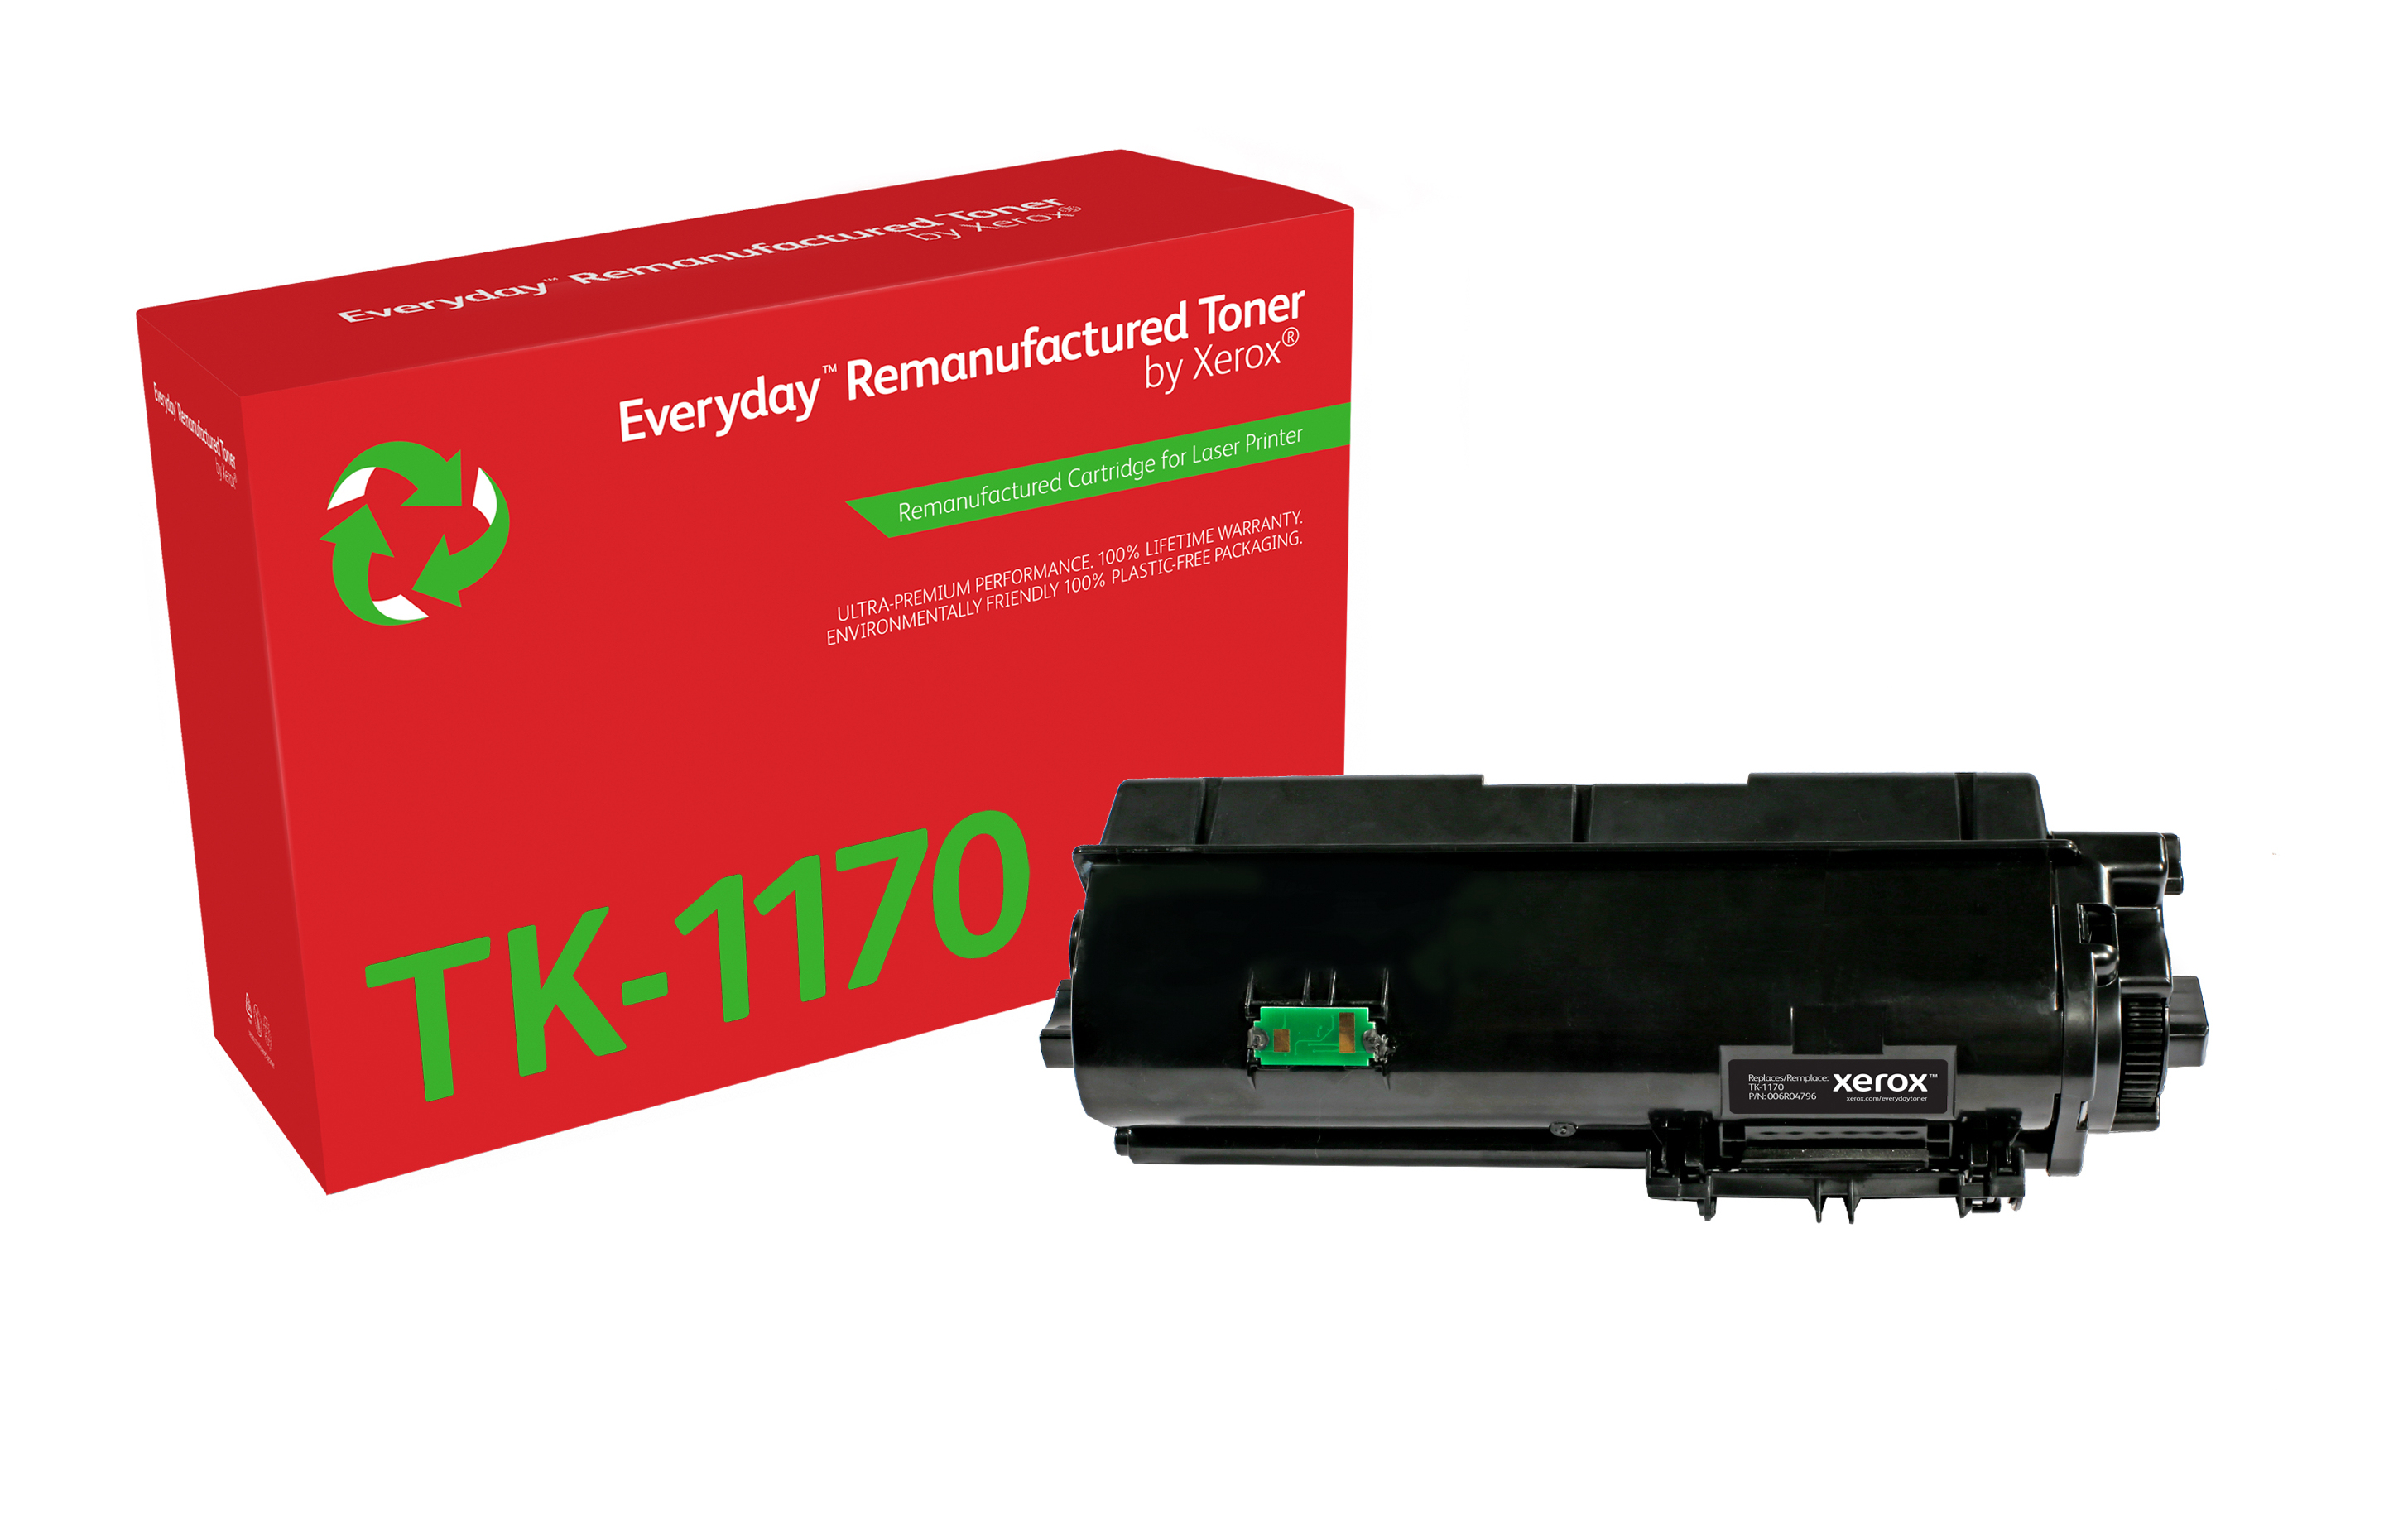 Remanufacturado Everyday Tner Everyday Negro remanufacturado de Xerox es compatible con Kyocera TK-1170, Capacidad estndar